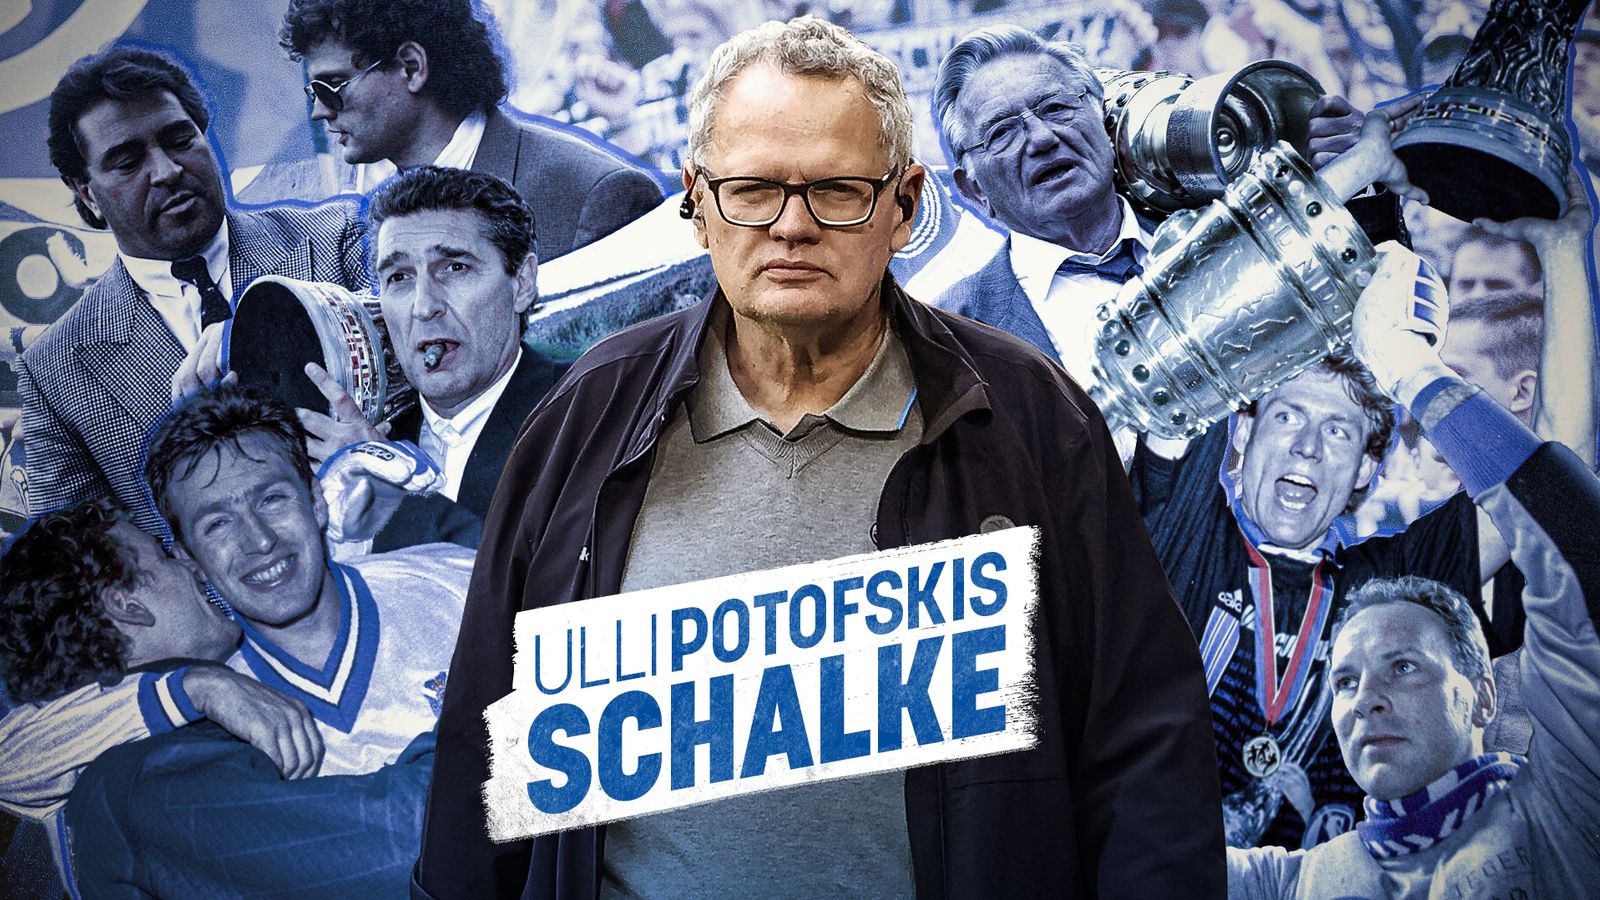 Schalke 04 News: Chronique d’Ulli Potofski sur l’espoir et les accords de transfert |  nouvelles du football